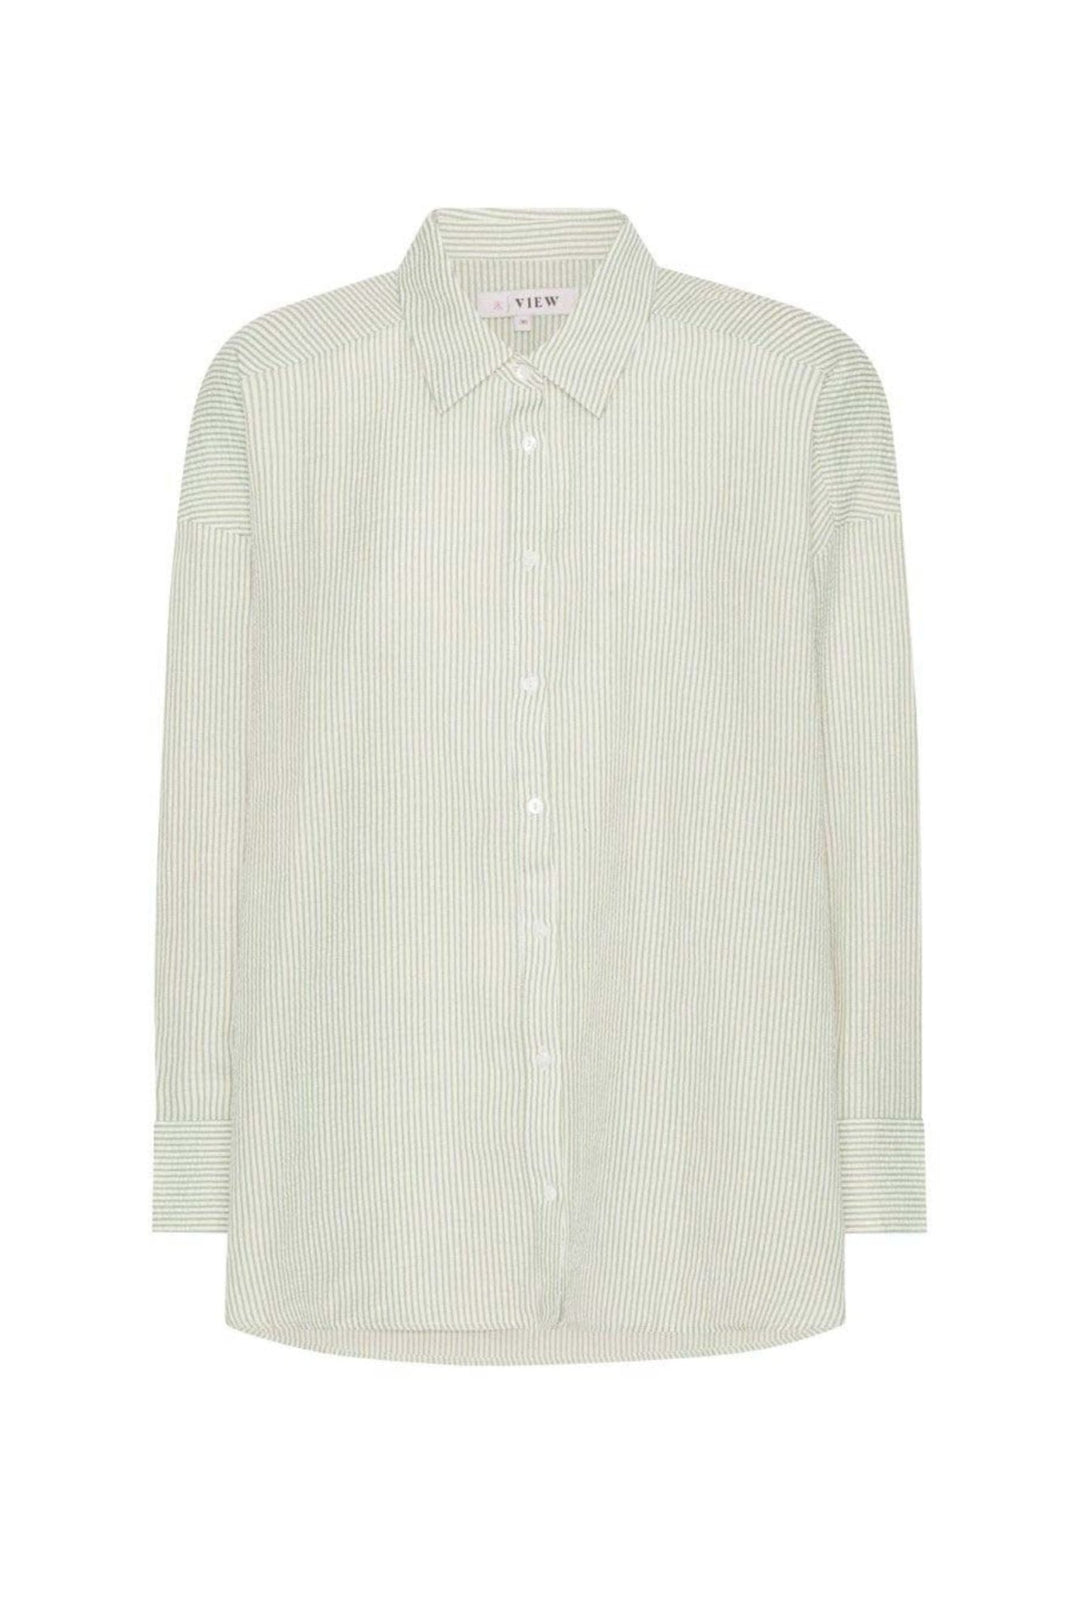 Sonja Shirt Green/White | Skjorter og bluser | Smuk - Dameklær på nett